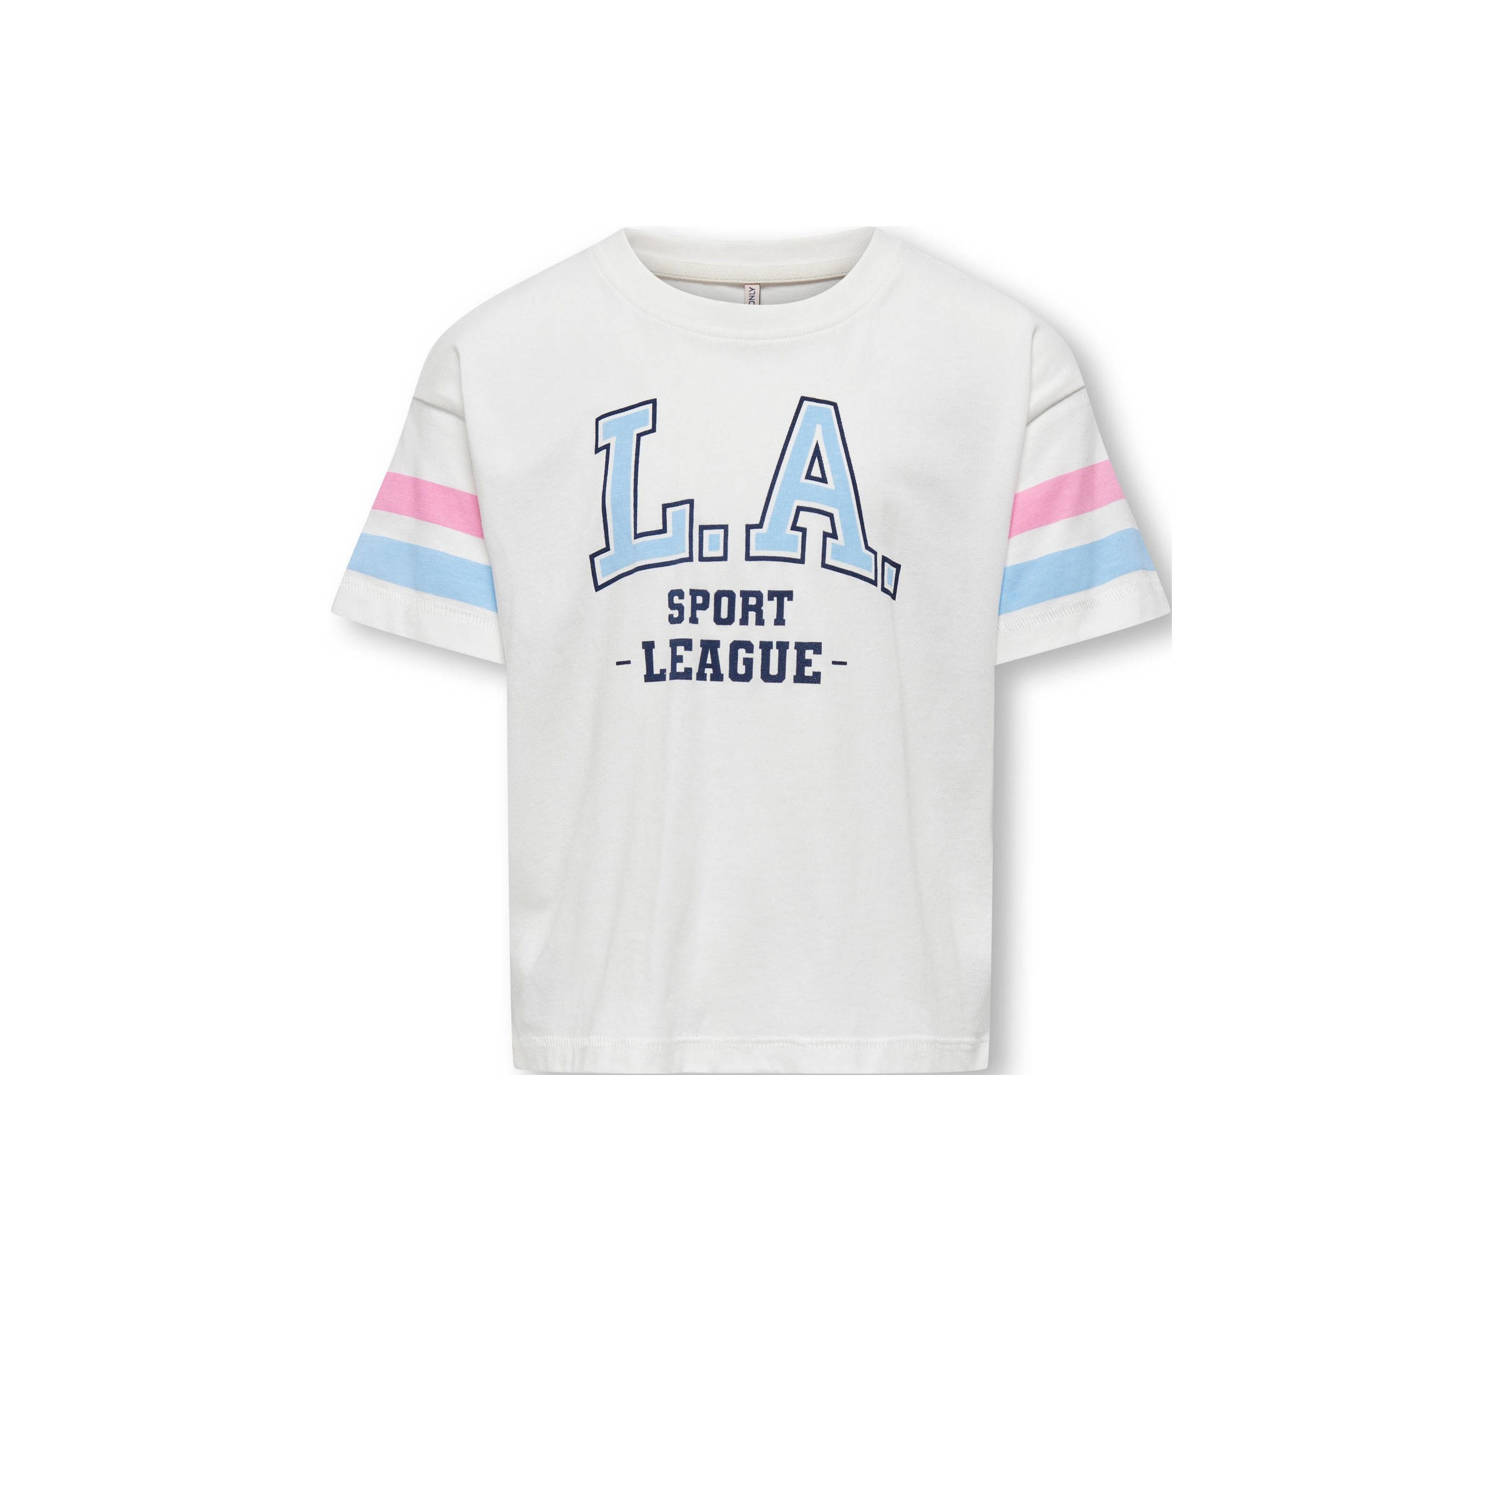 Only KIDS GIRL T-shirt KOGVERA LIFE met printopdruk wit lichtblauw roze Meisjes Katoen Ronde hals 110 116